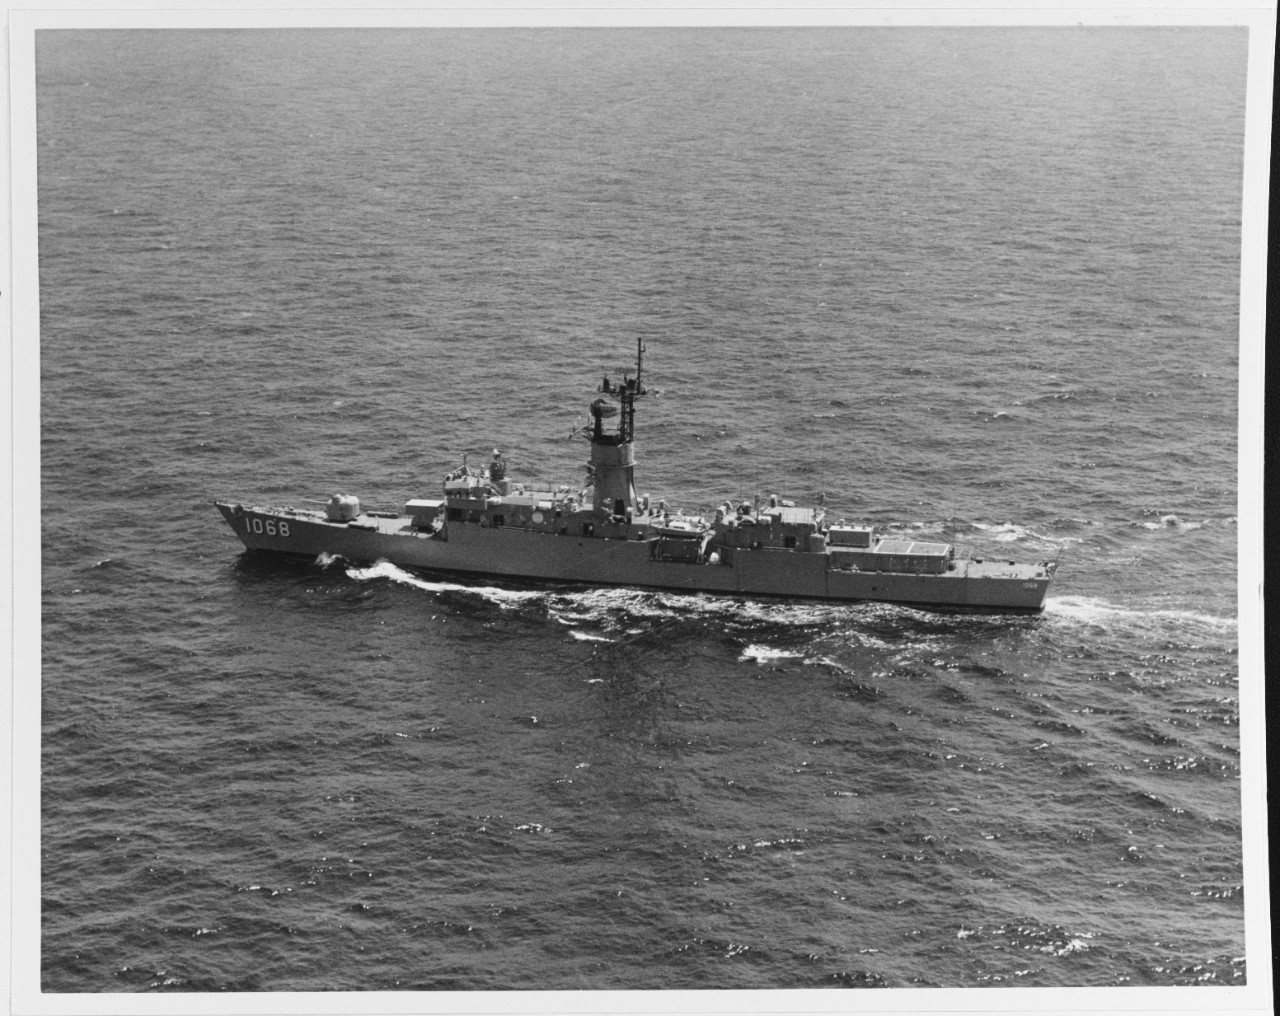 USS VREELAND (DE-1068)